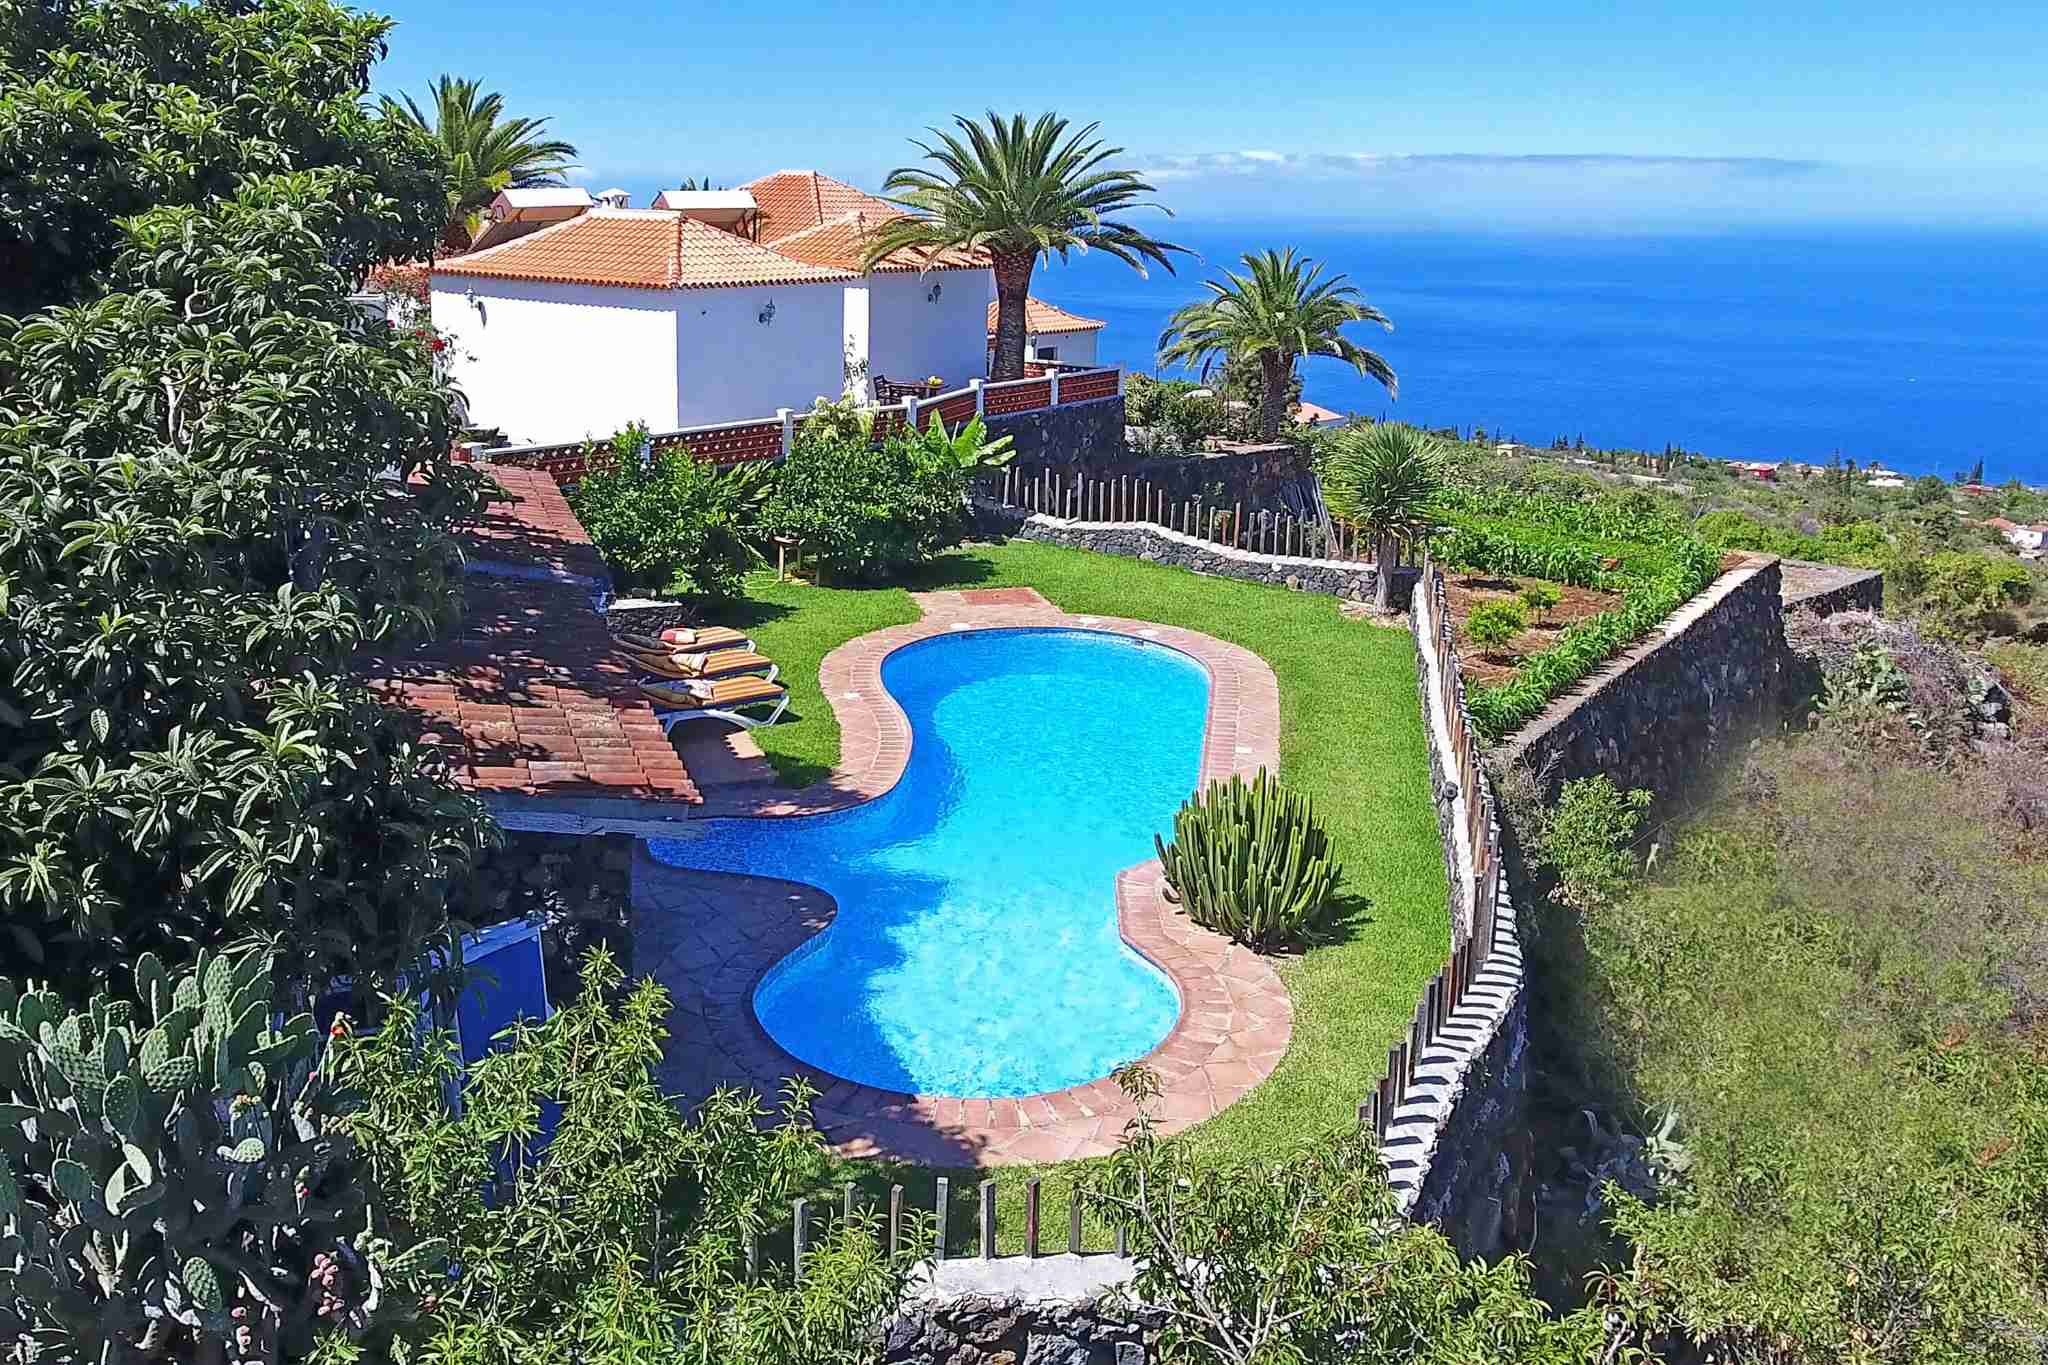 Casa rural con piscina comunitaria para unas vacaciones tranquilas en La Palma